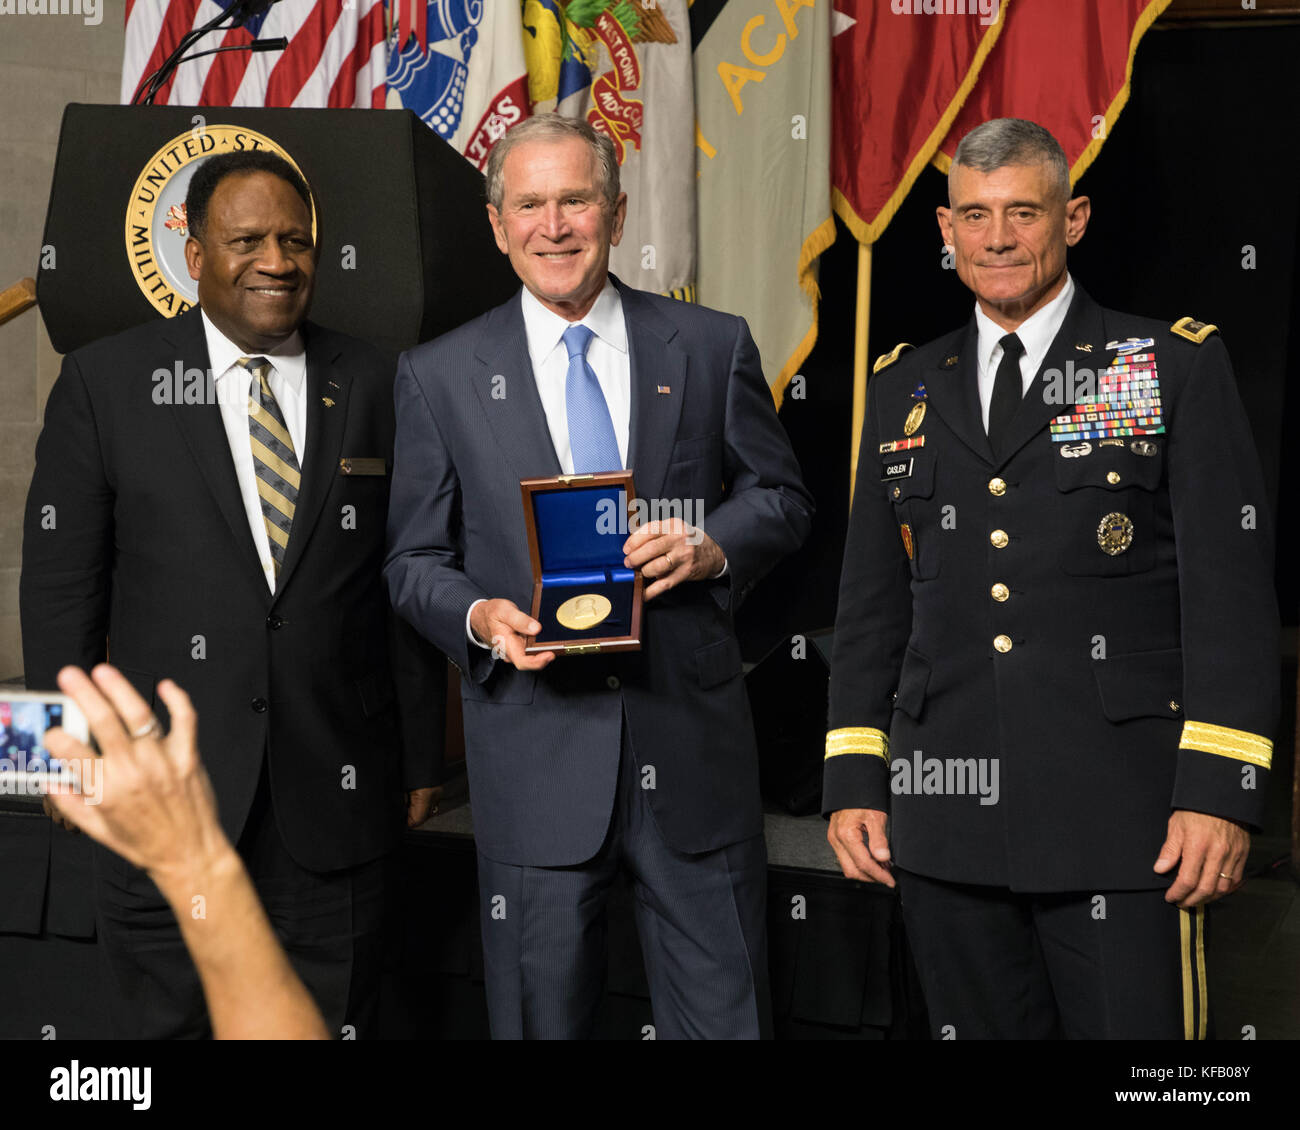 L'ex presidente degli Stati Uniti George W. bush (medio) riceve il sylvanus thayer premio in occasione di una cerimonia presso gli Stati Uniti Accademia Militare di West Point ottobre 19, 2017 a West Point, new york. (Foto di Michelle eberhart via planetpix) Foto Stock